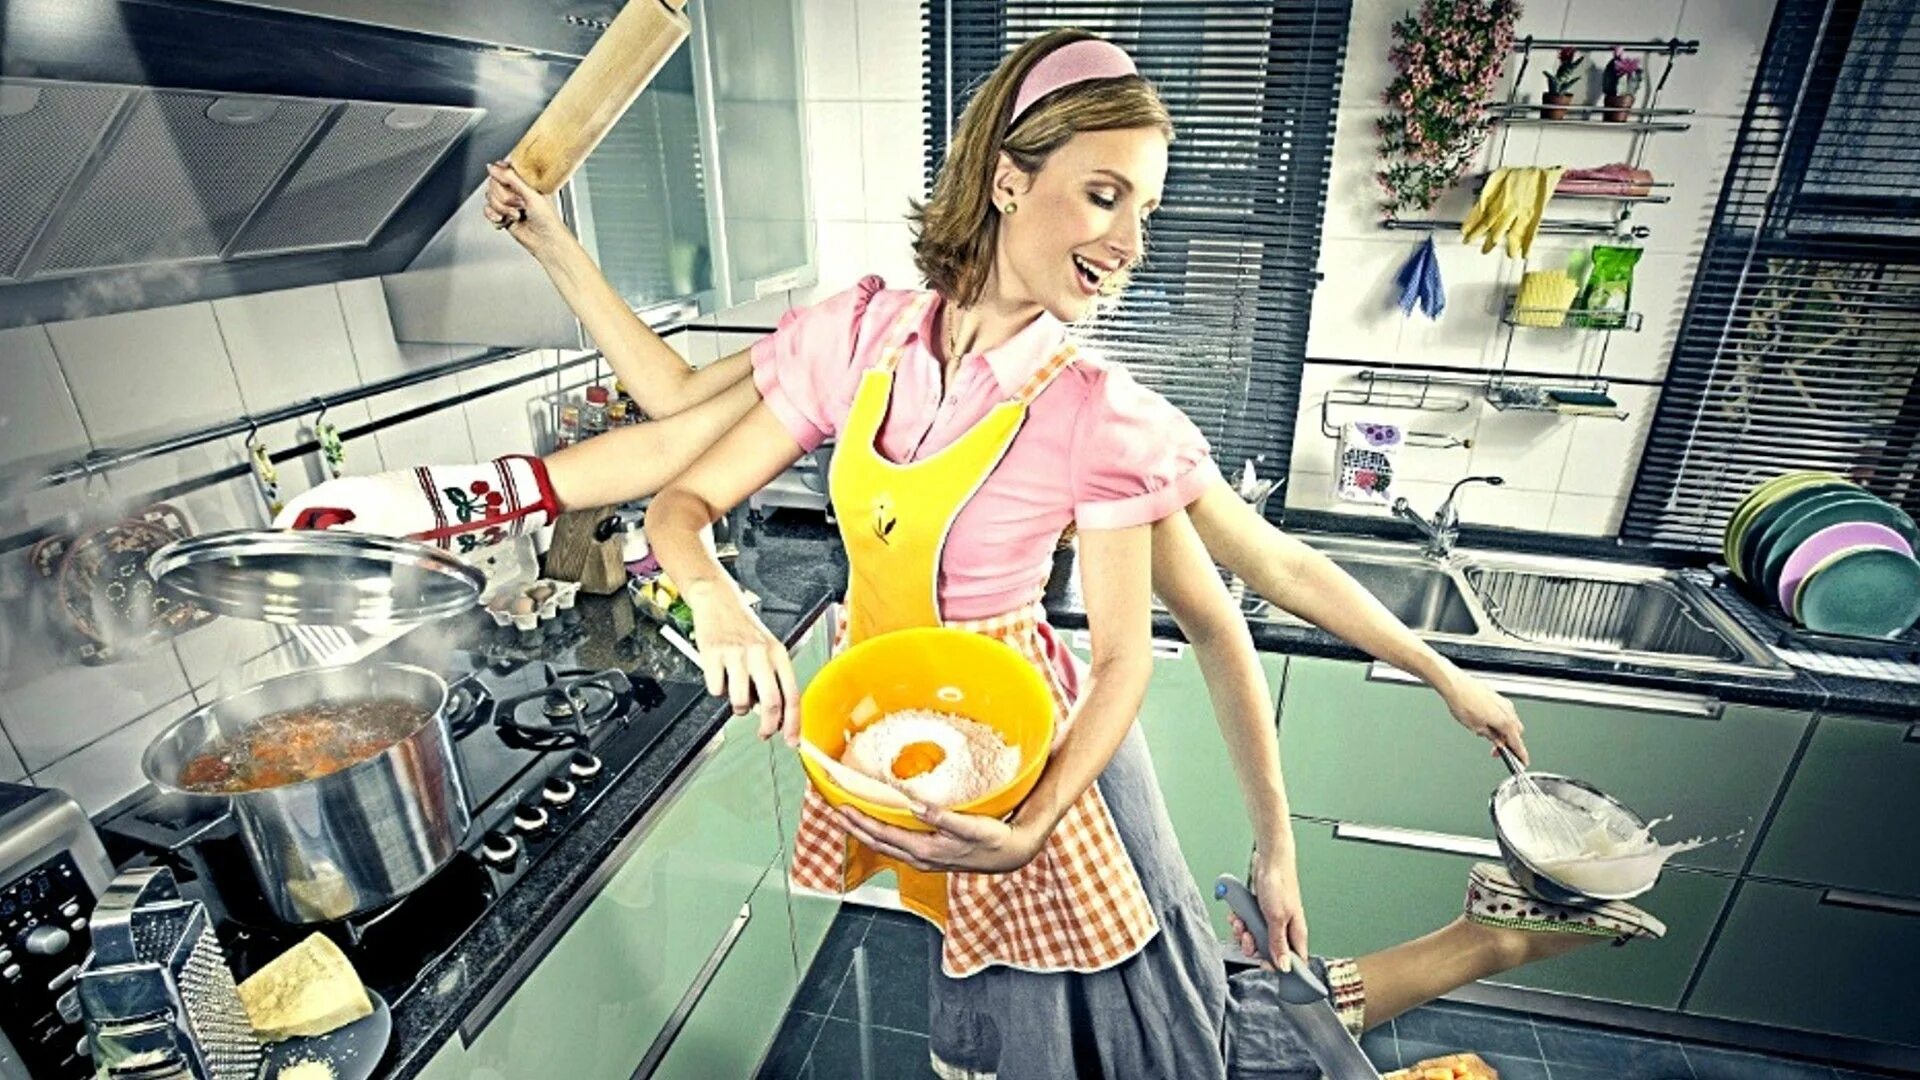 Я хозяйка этой жизни 139. Женщина домохозяйка. Кухня. Домохозяйка со стажем. Примерная жена.